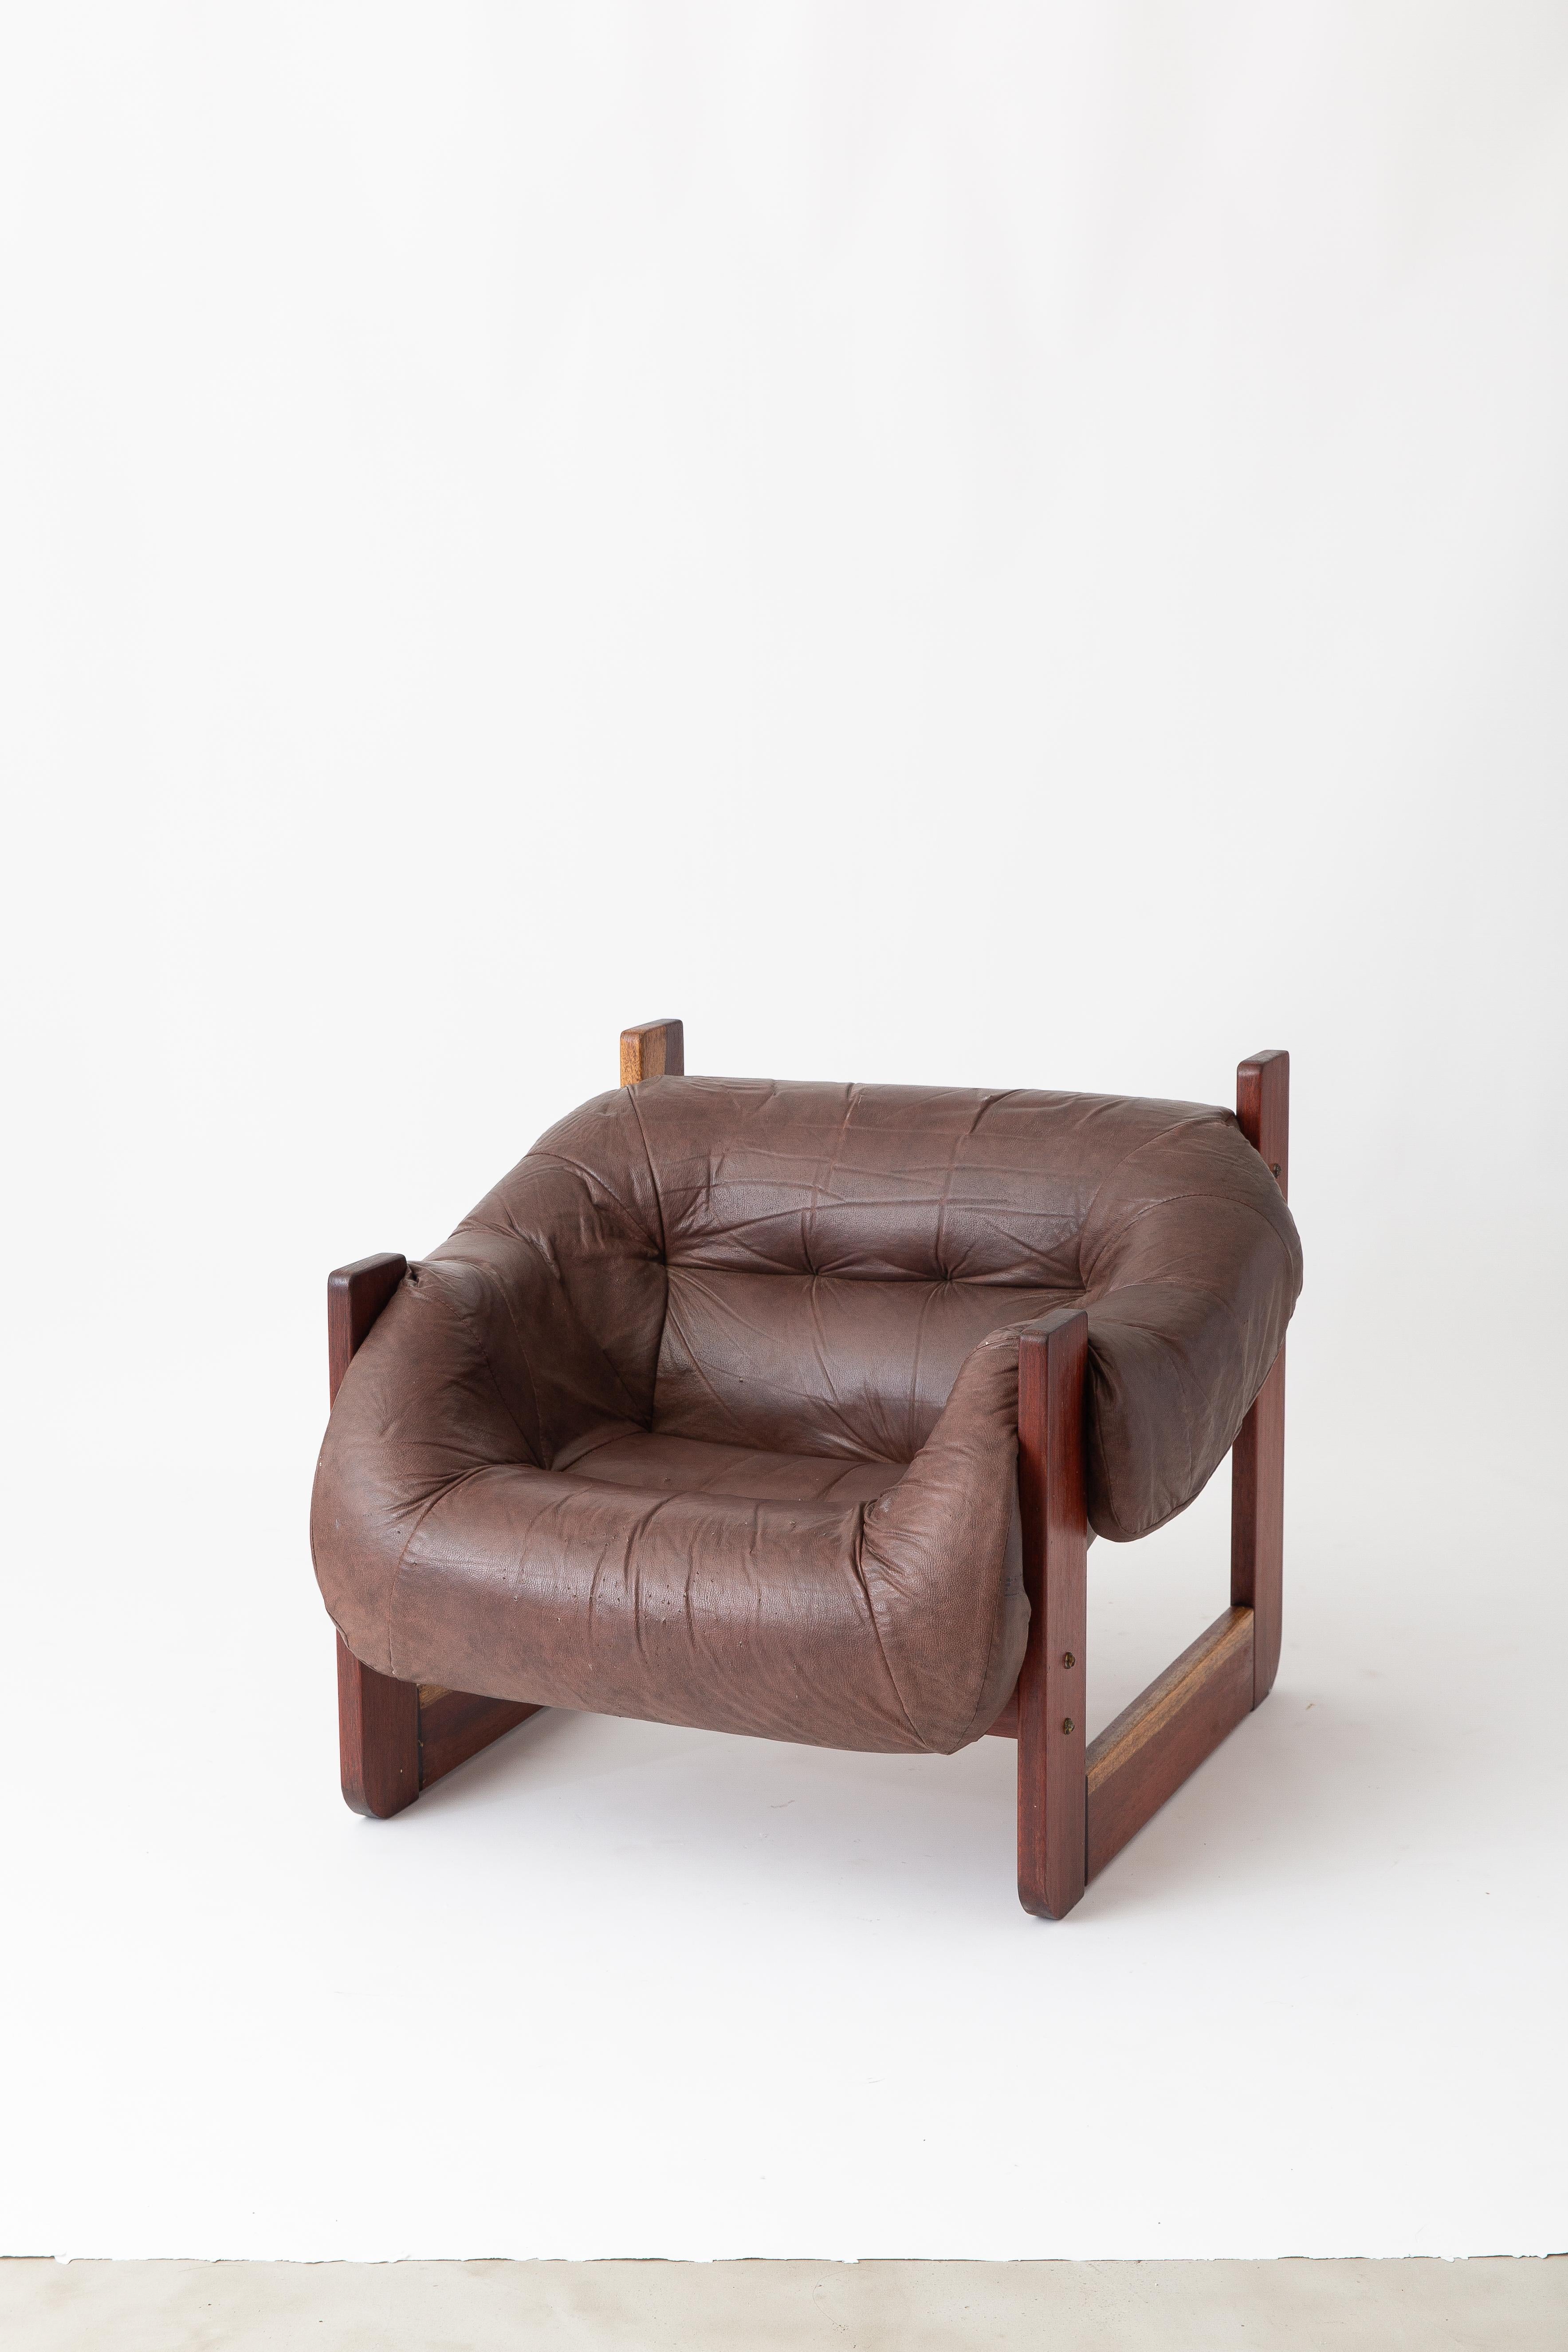 Der Sessel MP-97 von Percival Lafer bietet einen unverwechselbaren Stil, ist aber auch sehr bequem. Der Designer nutzte die neu verfügbare Technologie, um verschiedene Schaumstoffformen zu schaffen und die Grenzen von Form und Funktion zu erweitern.